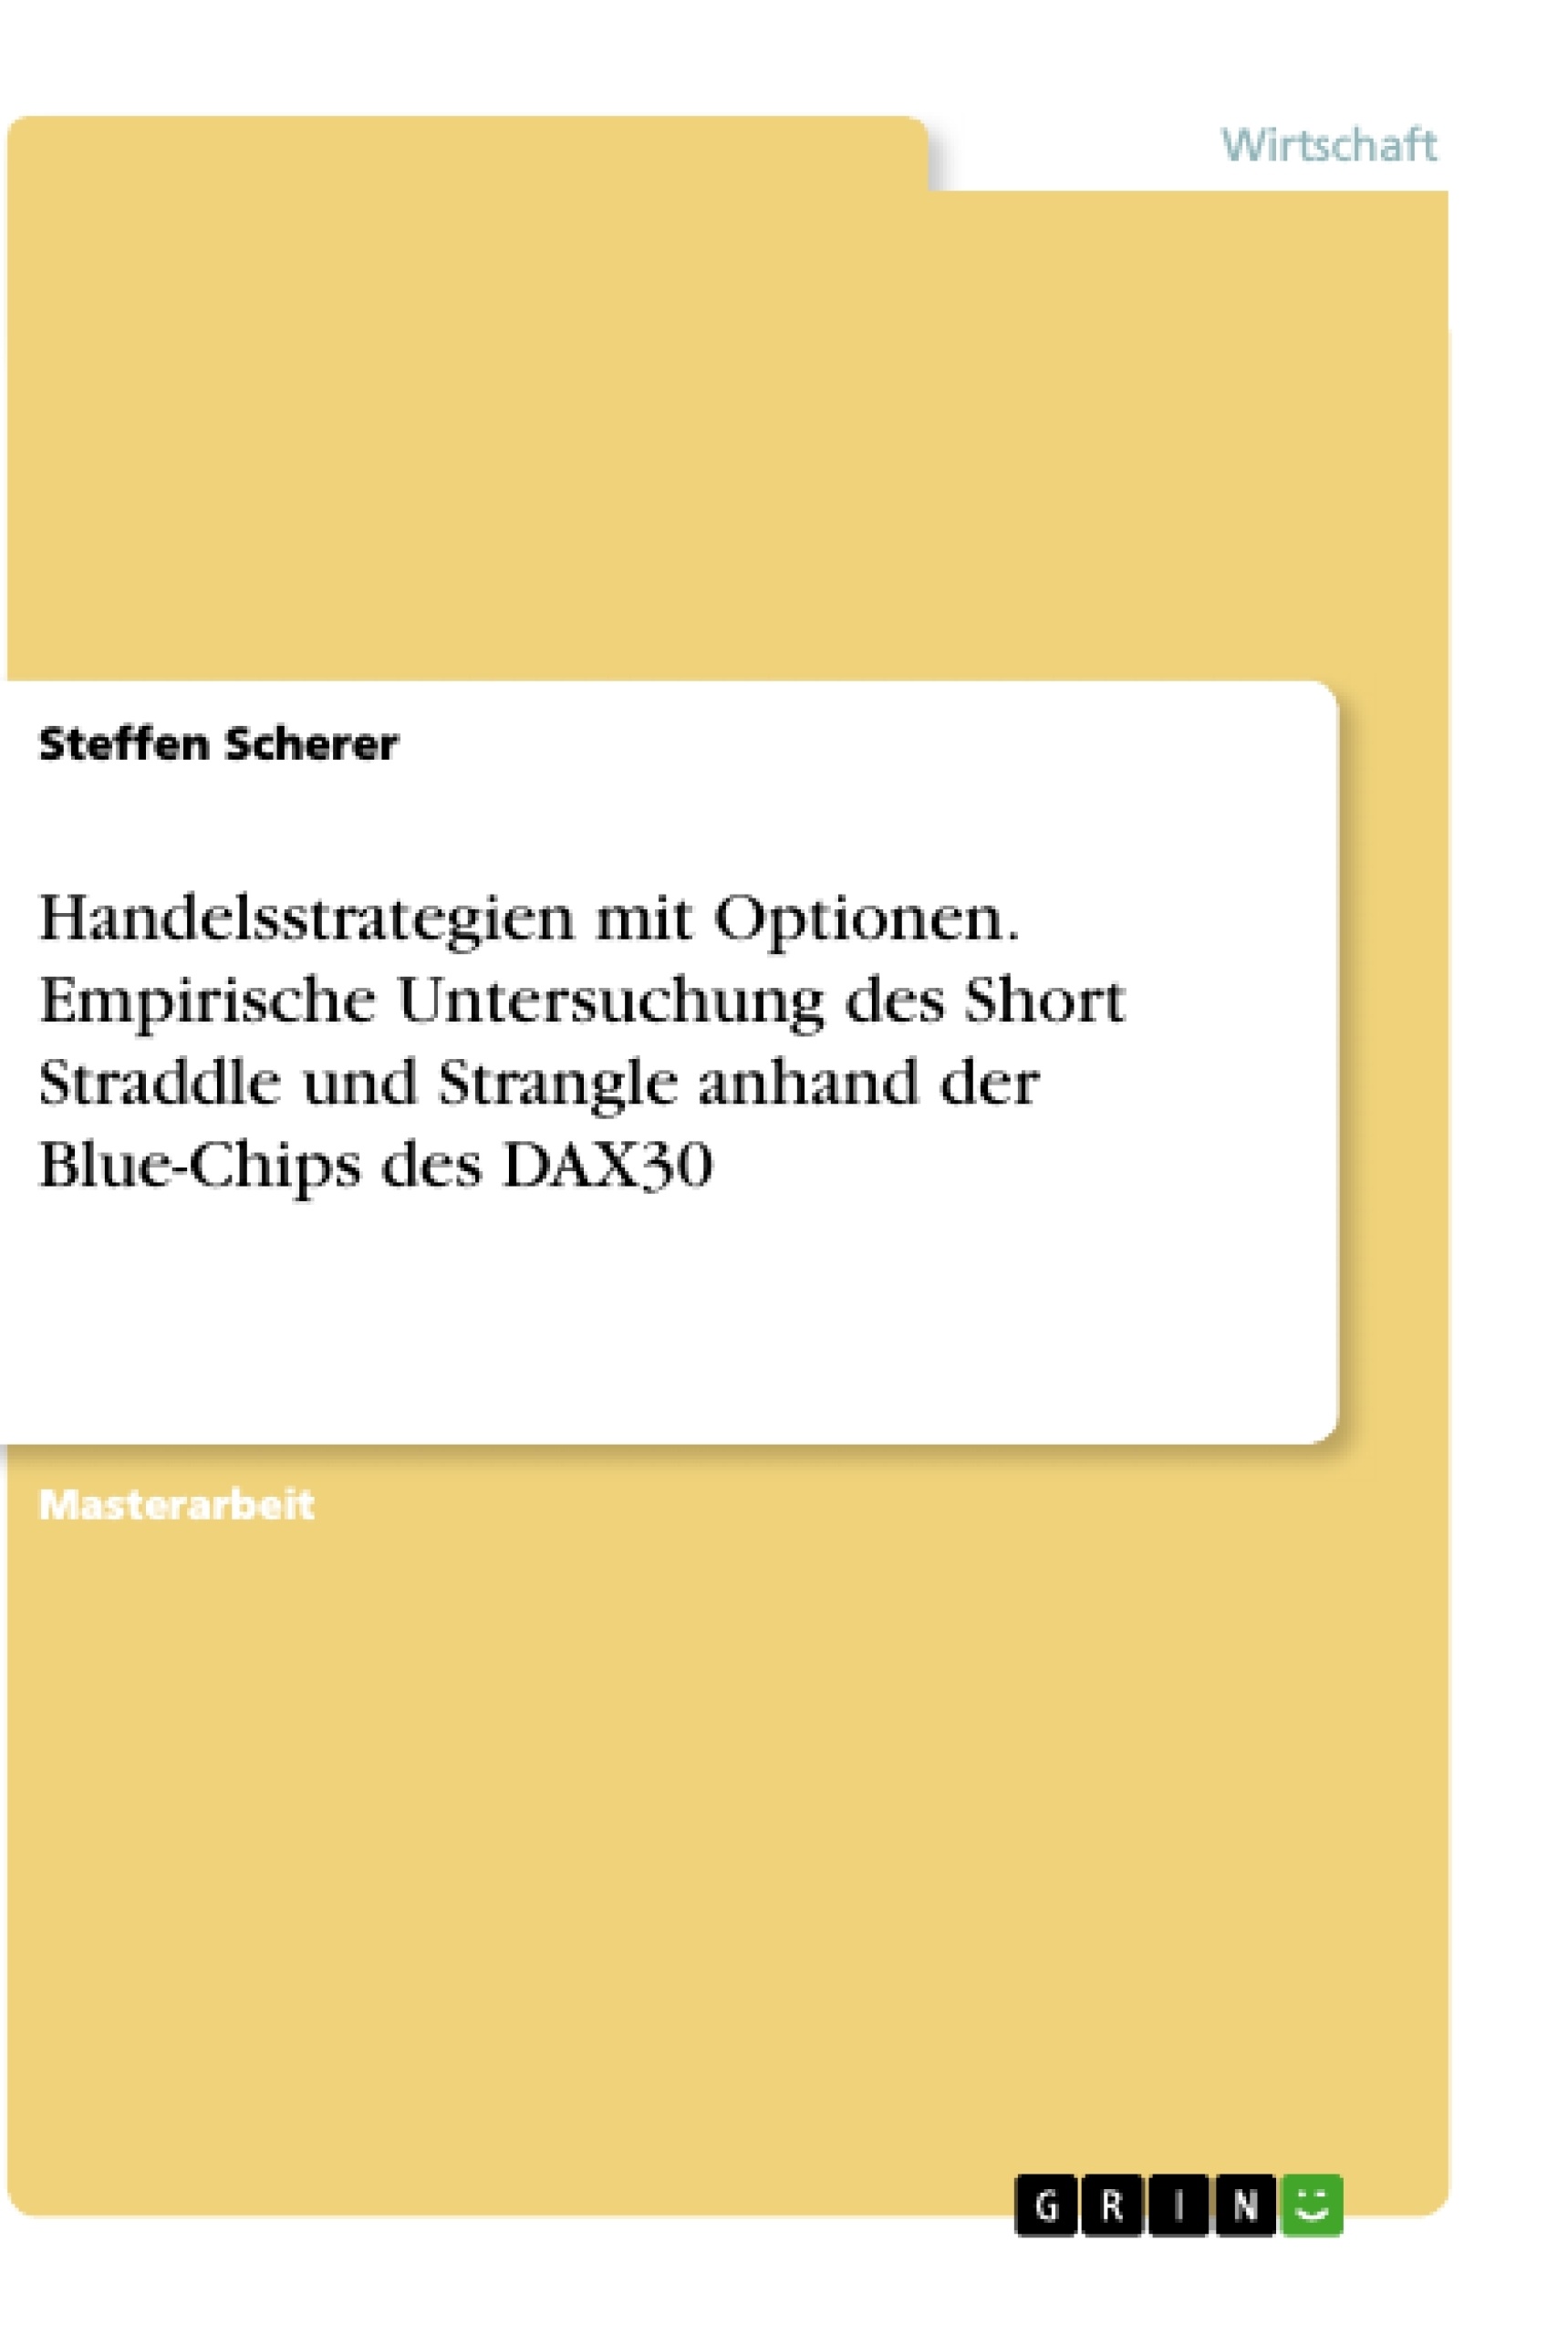 Título: Handelsstrategien mit Optionen. Empirische Untersuchung des Short Straddle und Strangle anhand der Blue-Chips des DAX30